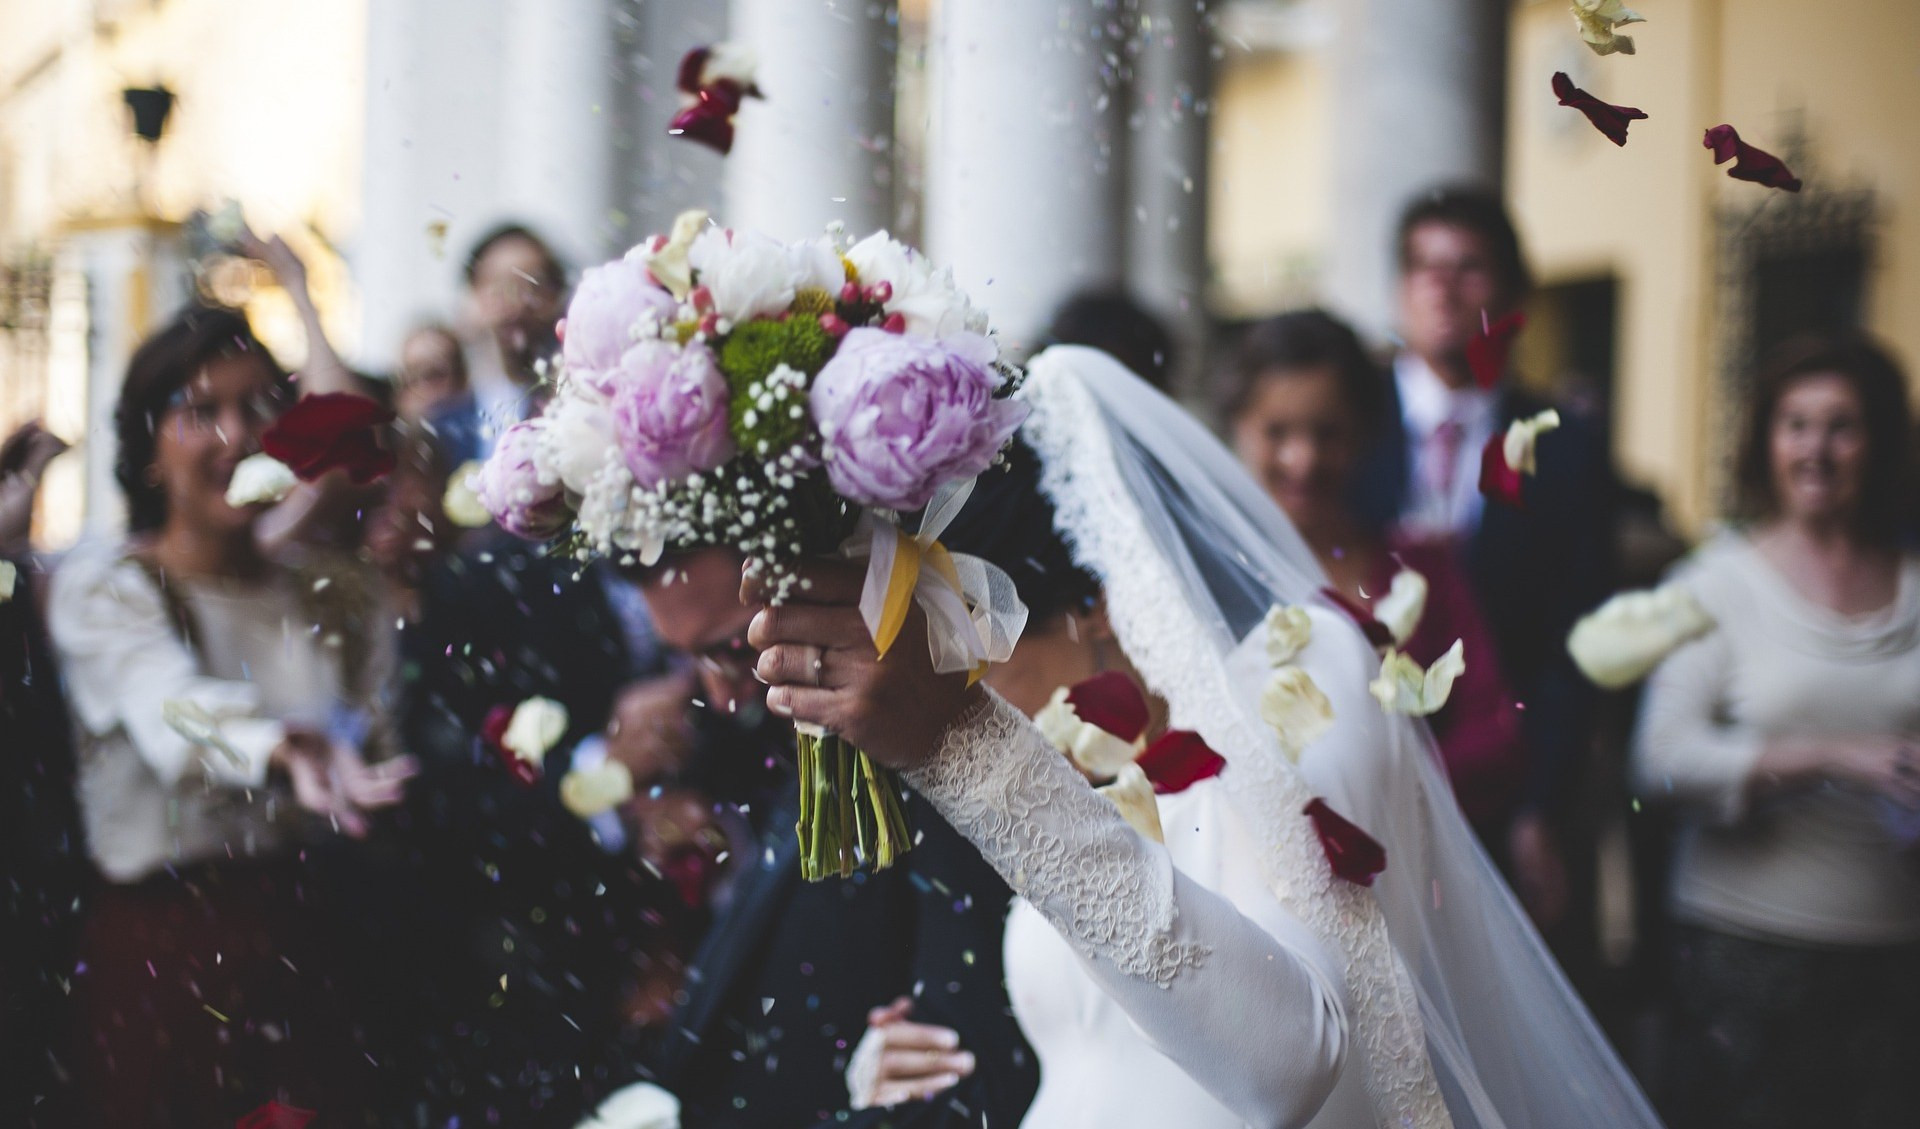 Matrimoni in chiesa, in Liguria annullati per l'immaturità degli sposi